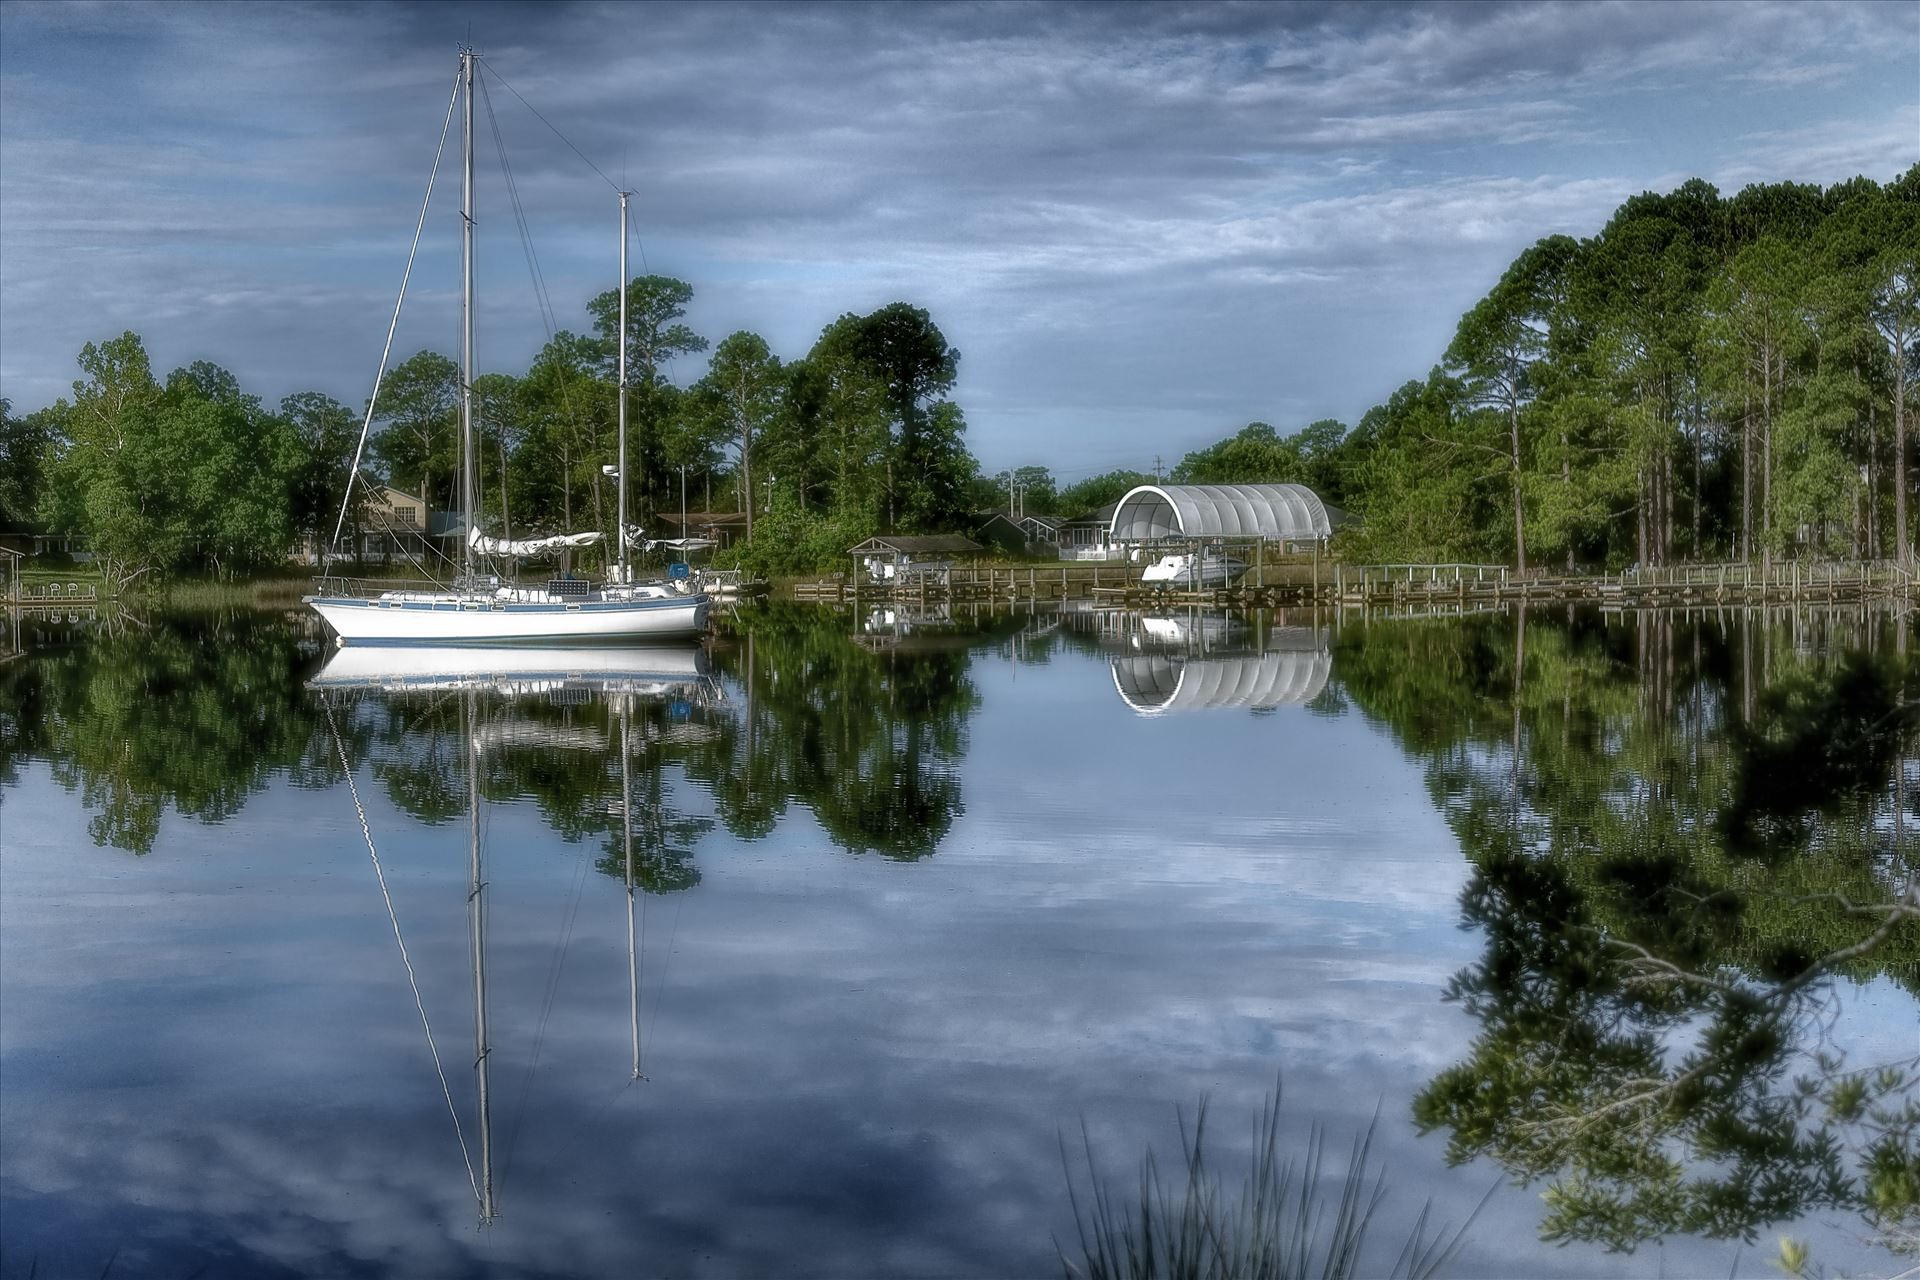 sailboat callaway bayou 8500104.jpg - sailboat callaway bayou by Terry Kelly Photography